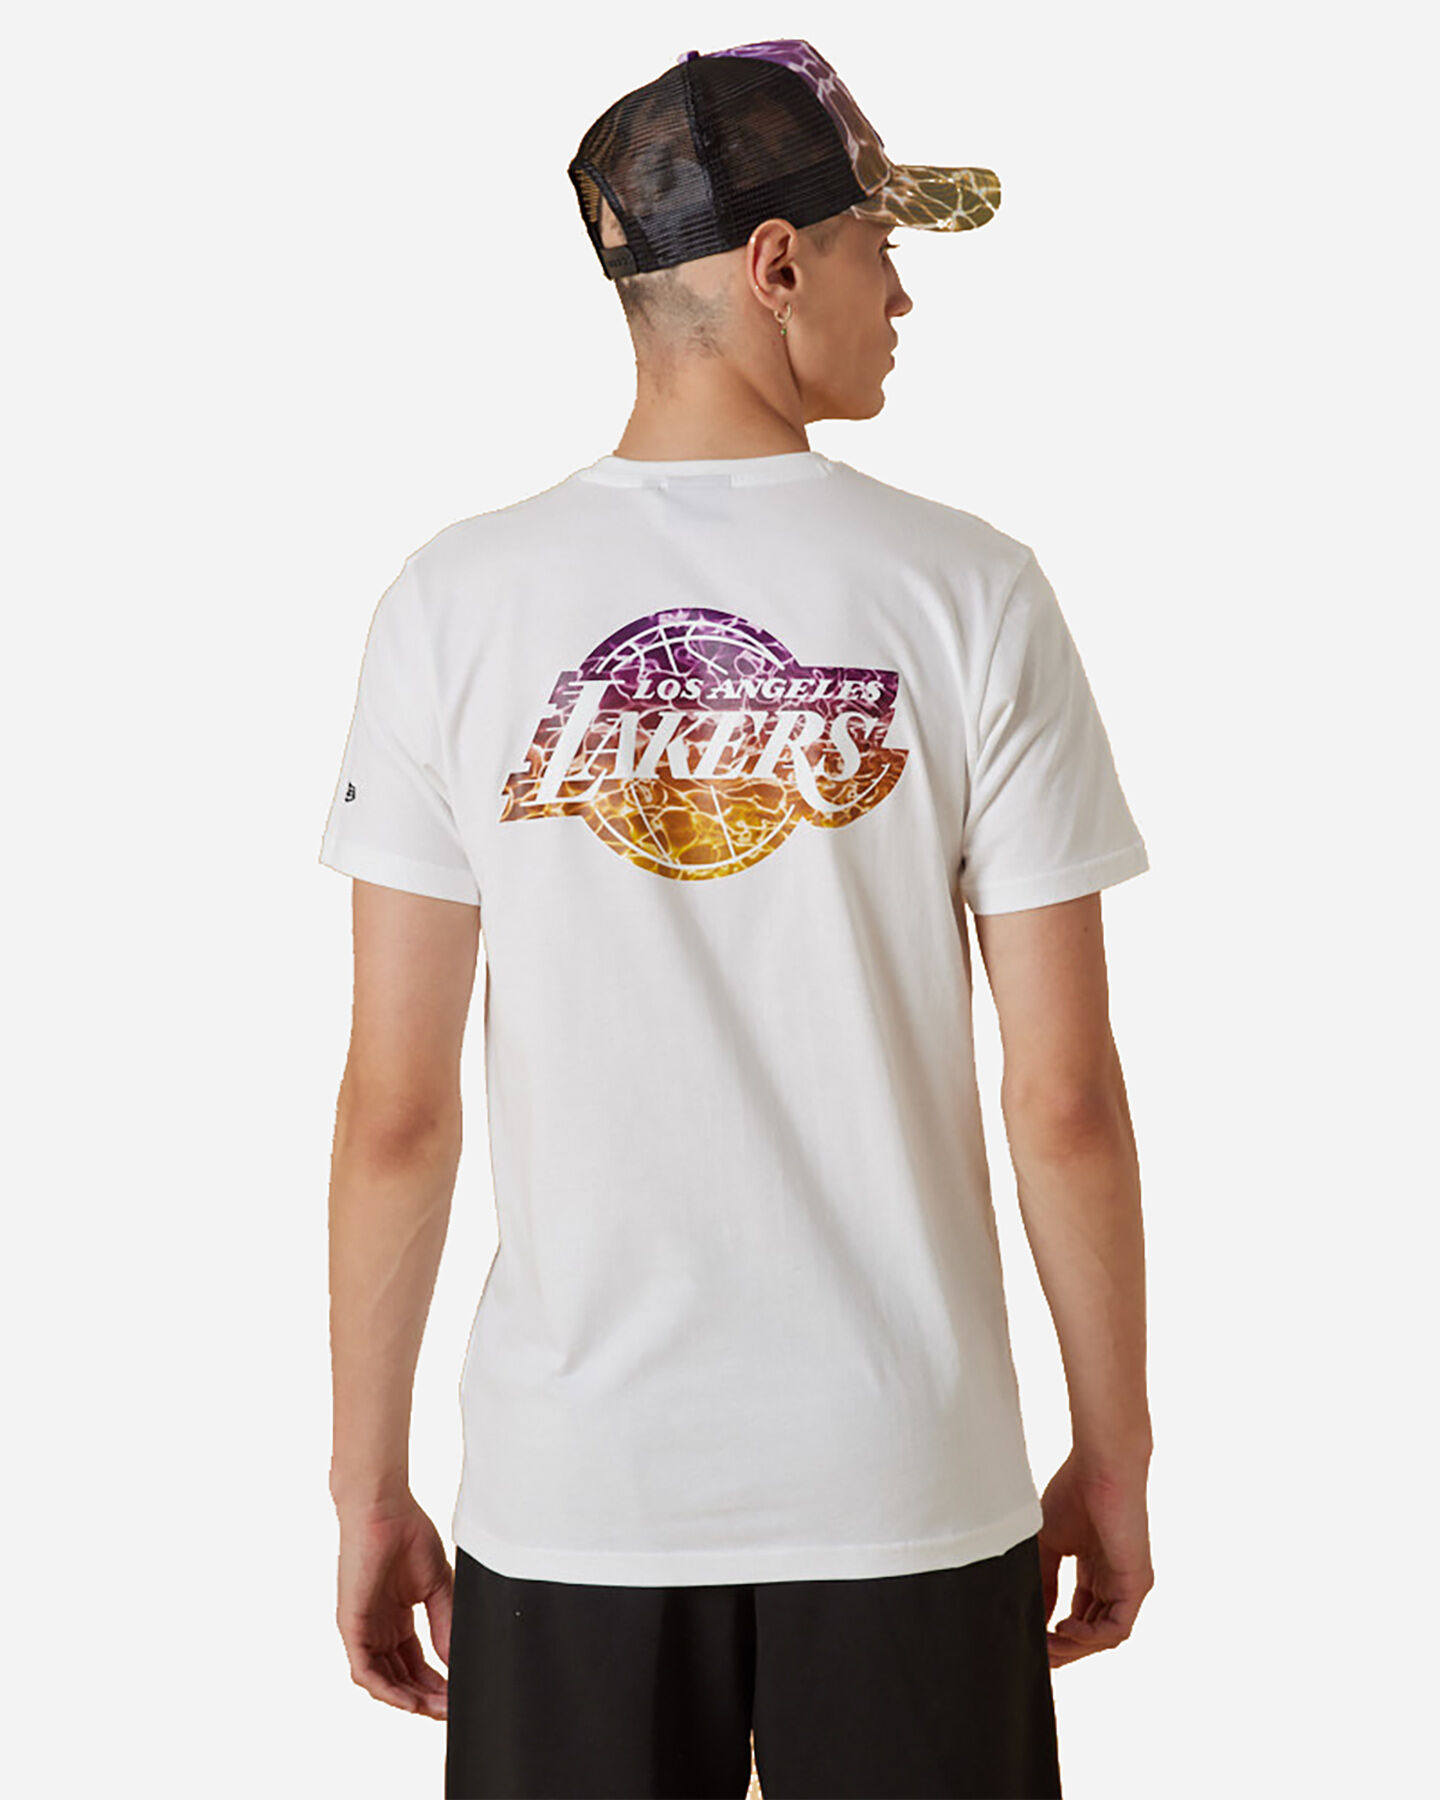  Abbigliamento basket NEW ERA NBA BACKWATER PRINT LAKERS M S5448197|100|S scatto 1